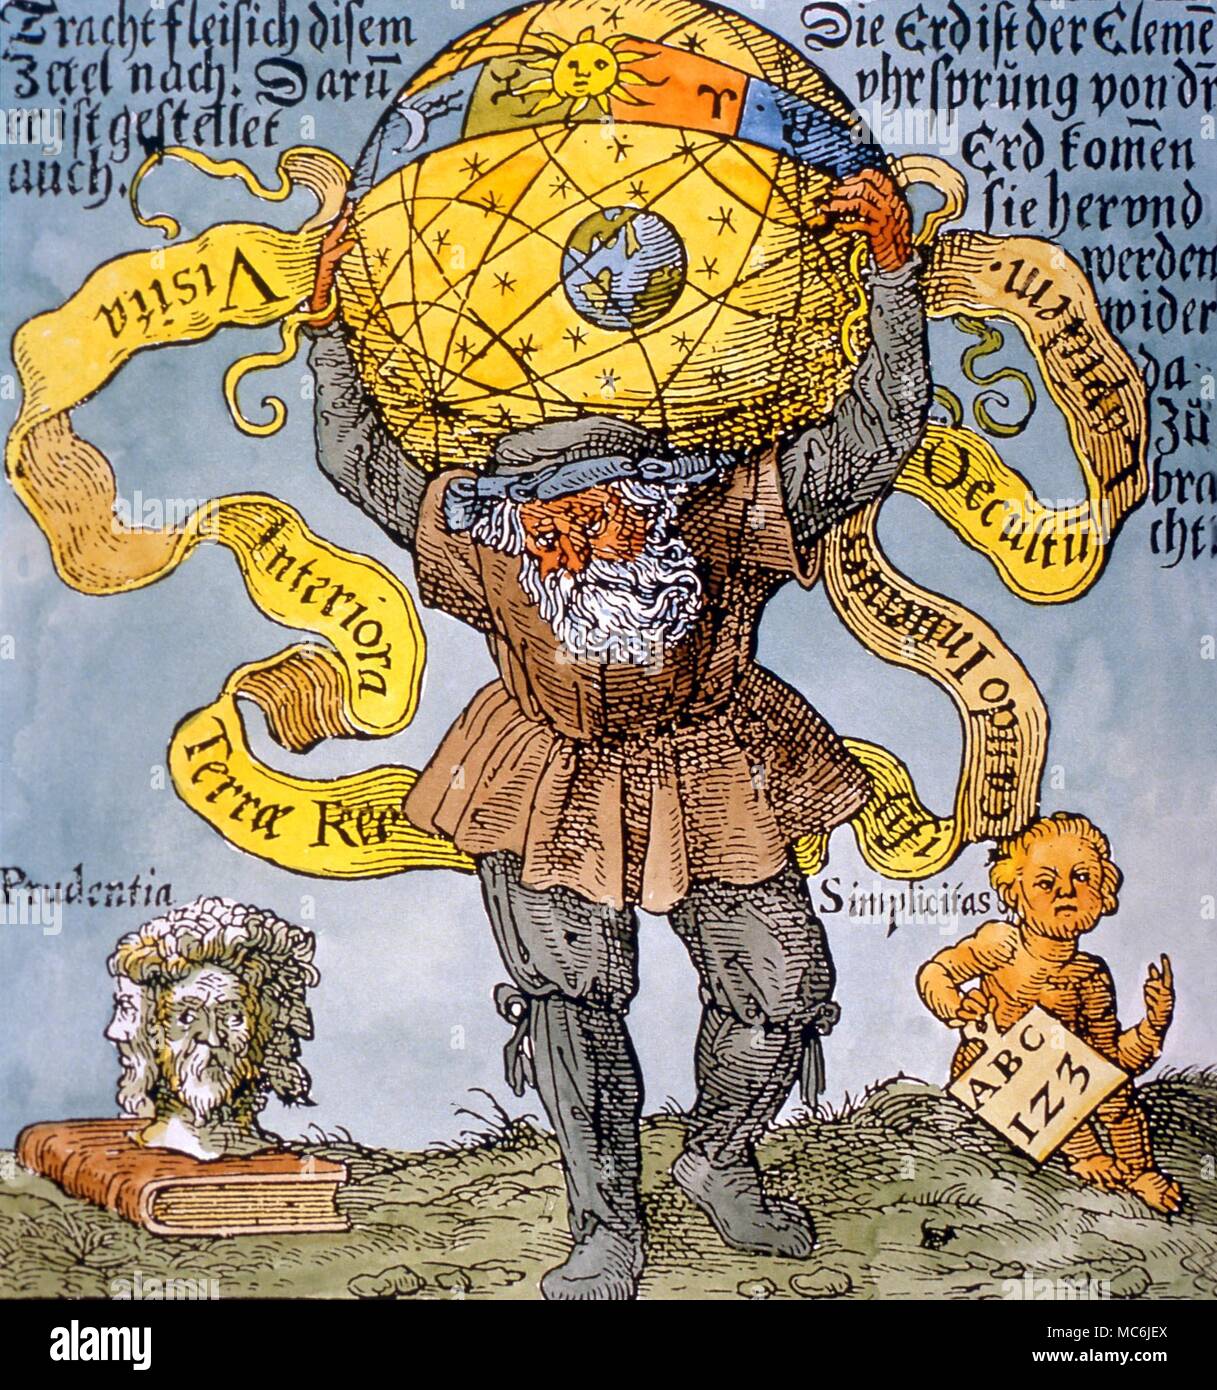 Alquimia - Atlas y globo celestial. Imagen del Atlas llevando el globo estelar. A partir de la Edición Alemana (1603) de Basil Valentine's "Occulta Philosophia' Foto de stock